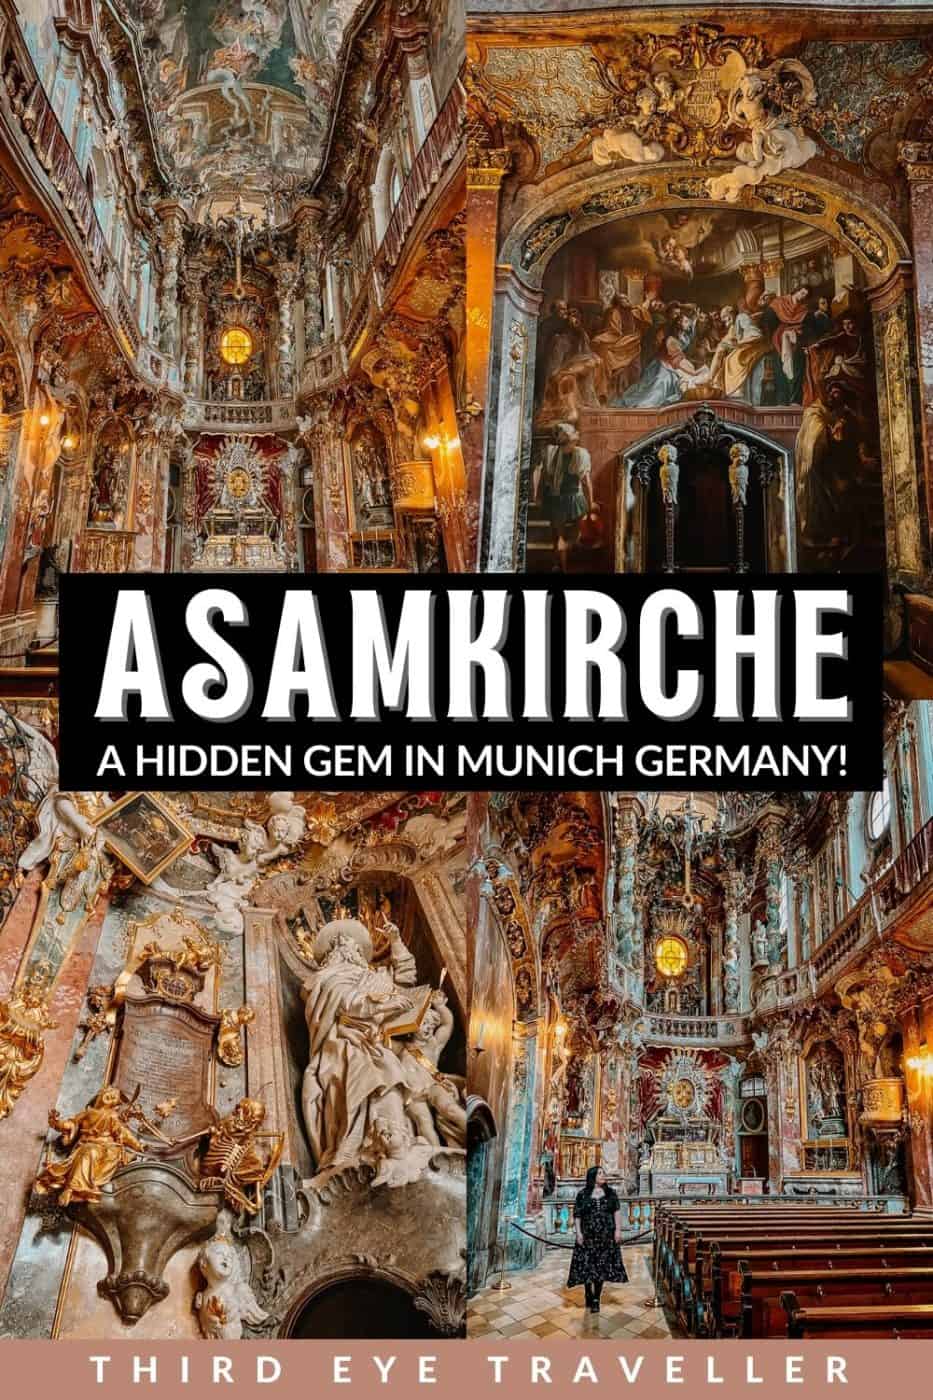 How to Visit Asamkirche Munich Hidden Gem